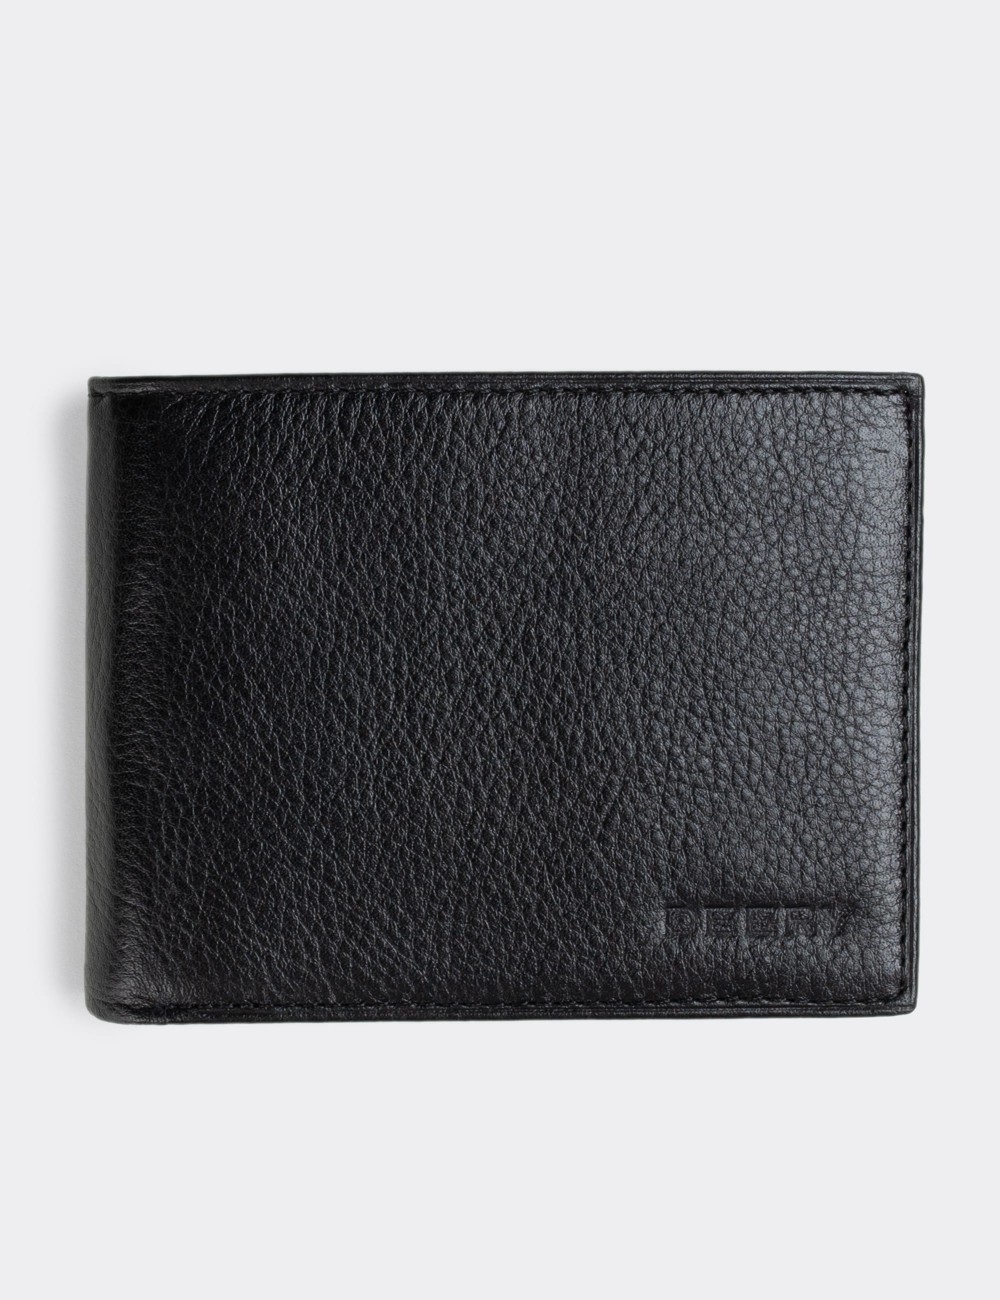  Leather Black Men's Wallet - 00334MSYHZ01